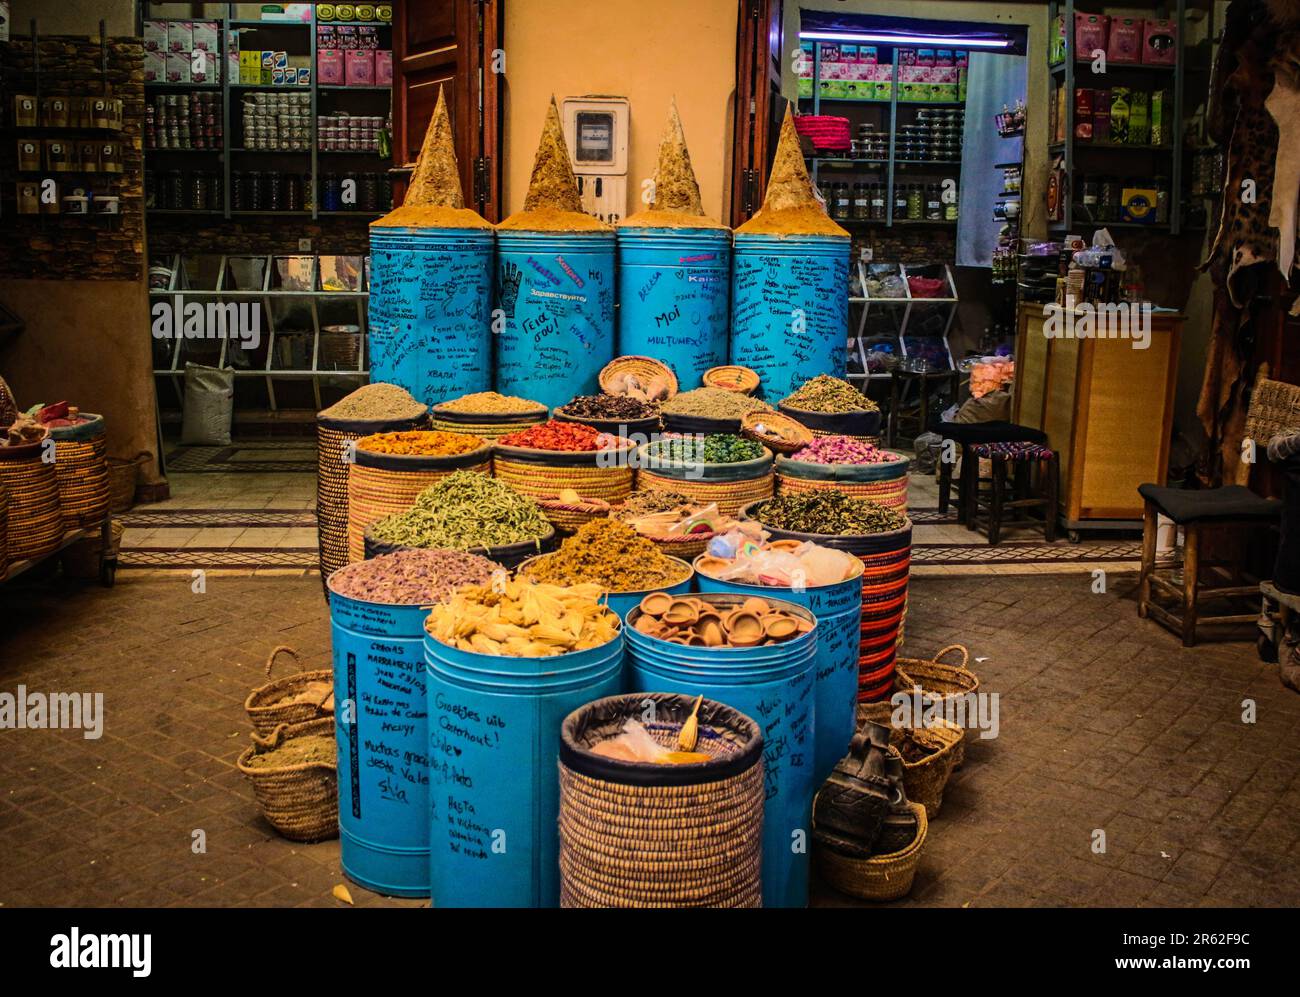 Mercados de Marrakech, Capital de marruecos Stock Photo